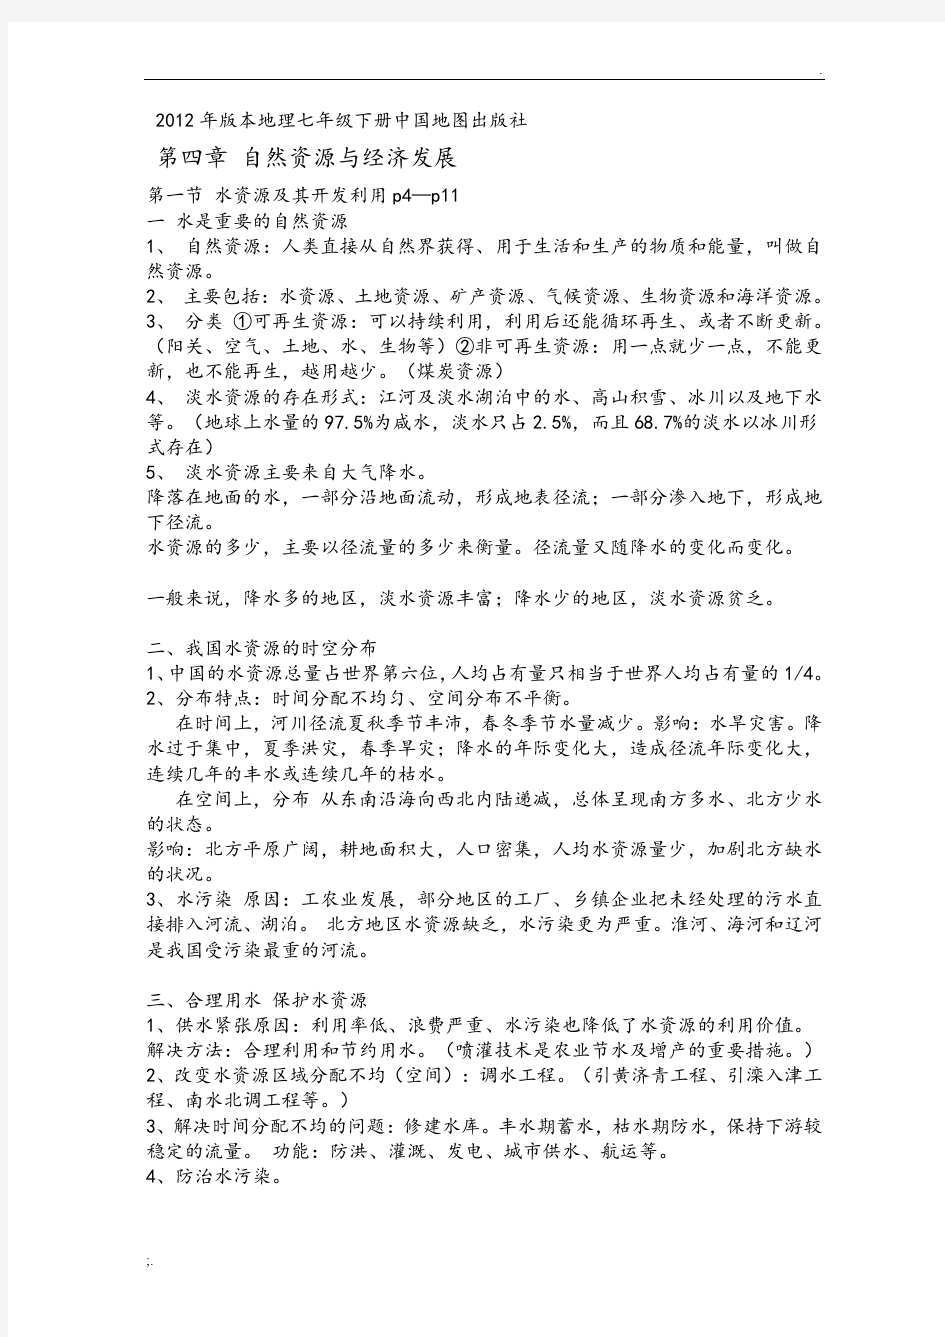 2012年版本七年级(下册)《中国地图出版社地理》